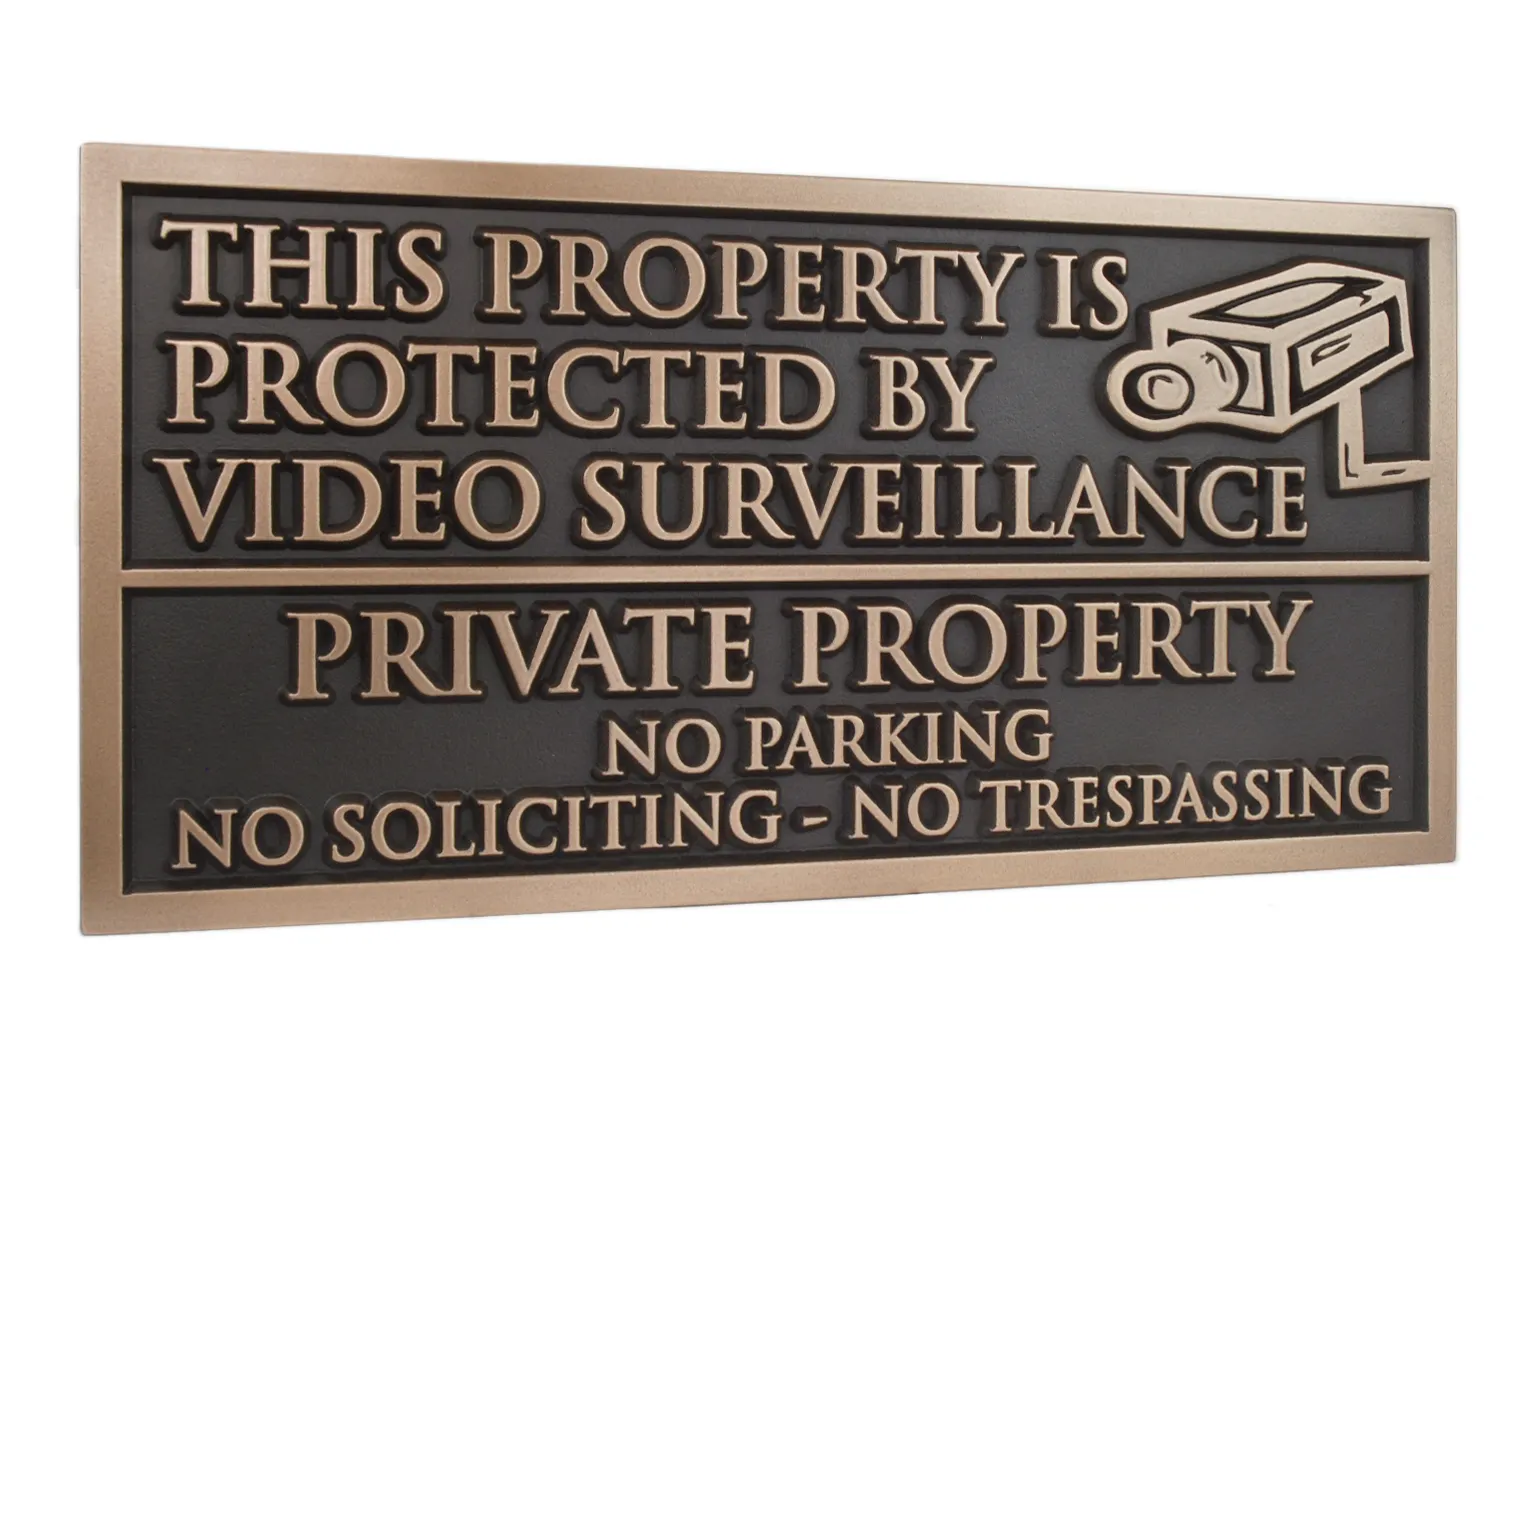 銅またはアルミニウムで刻まれた看板には、「このプロパティはビデオ監視によって保護されており、私有財産は駐車場なし」と書かれています